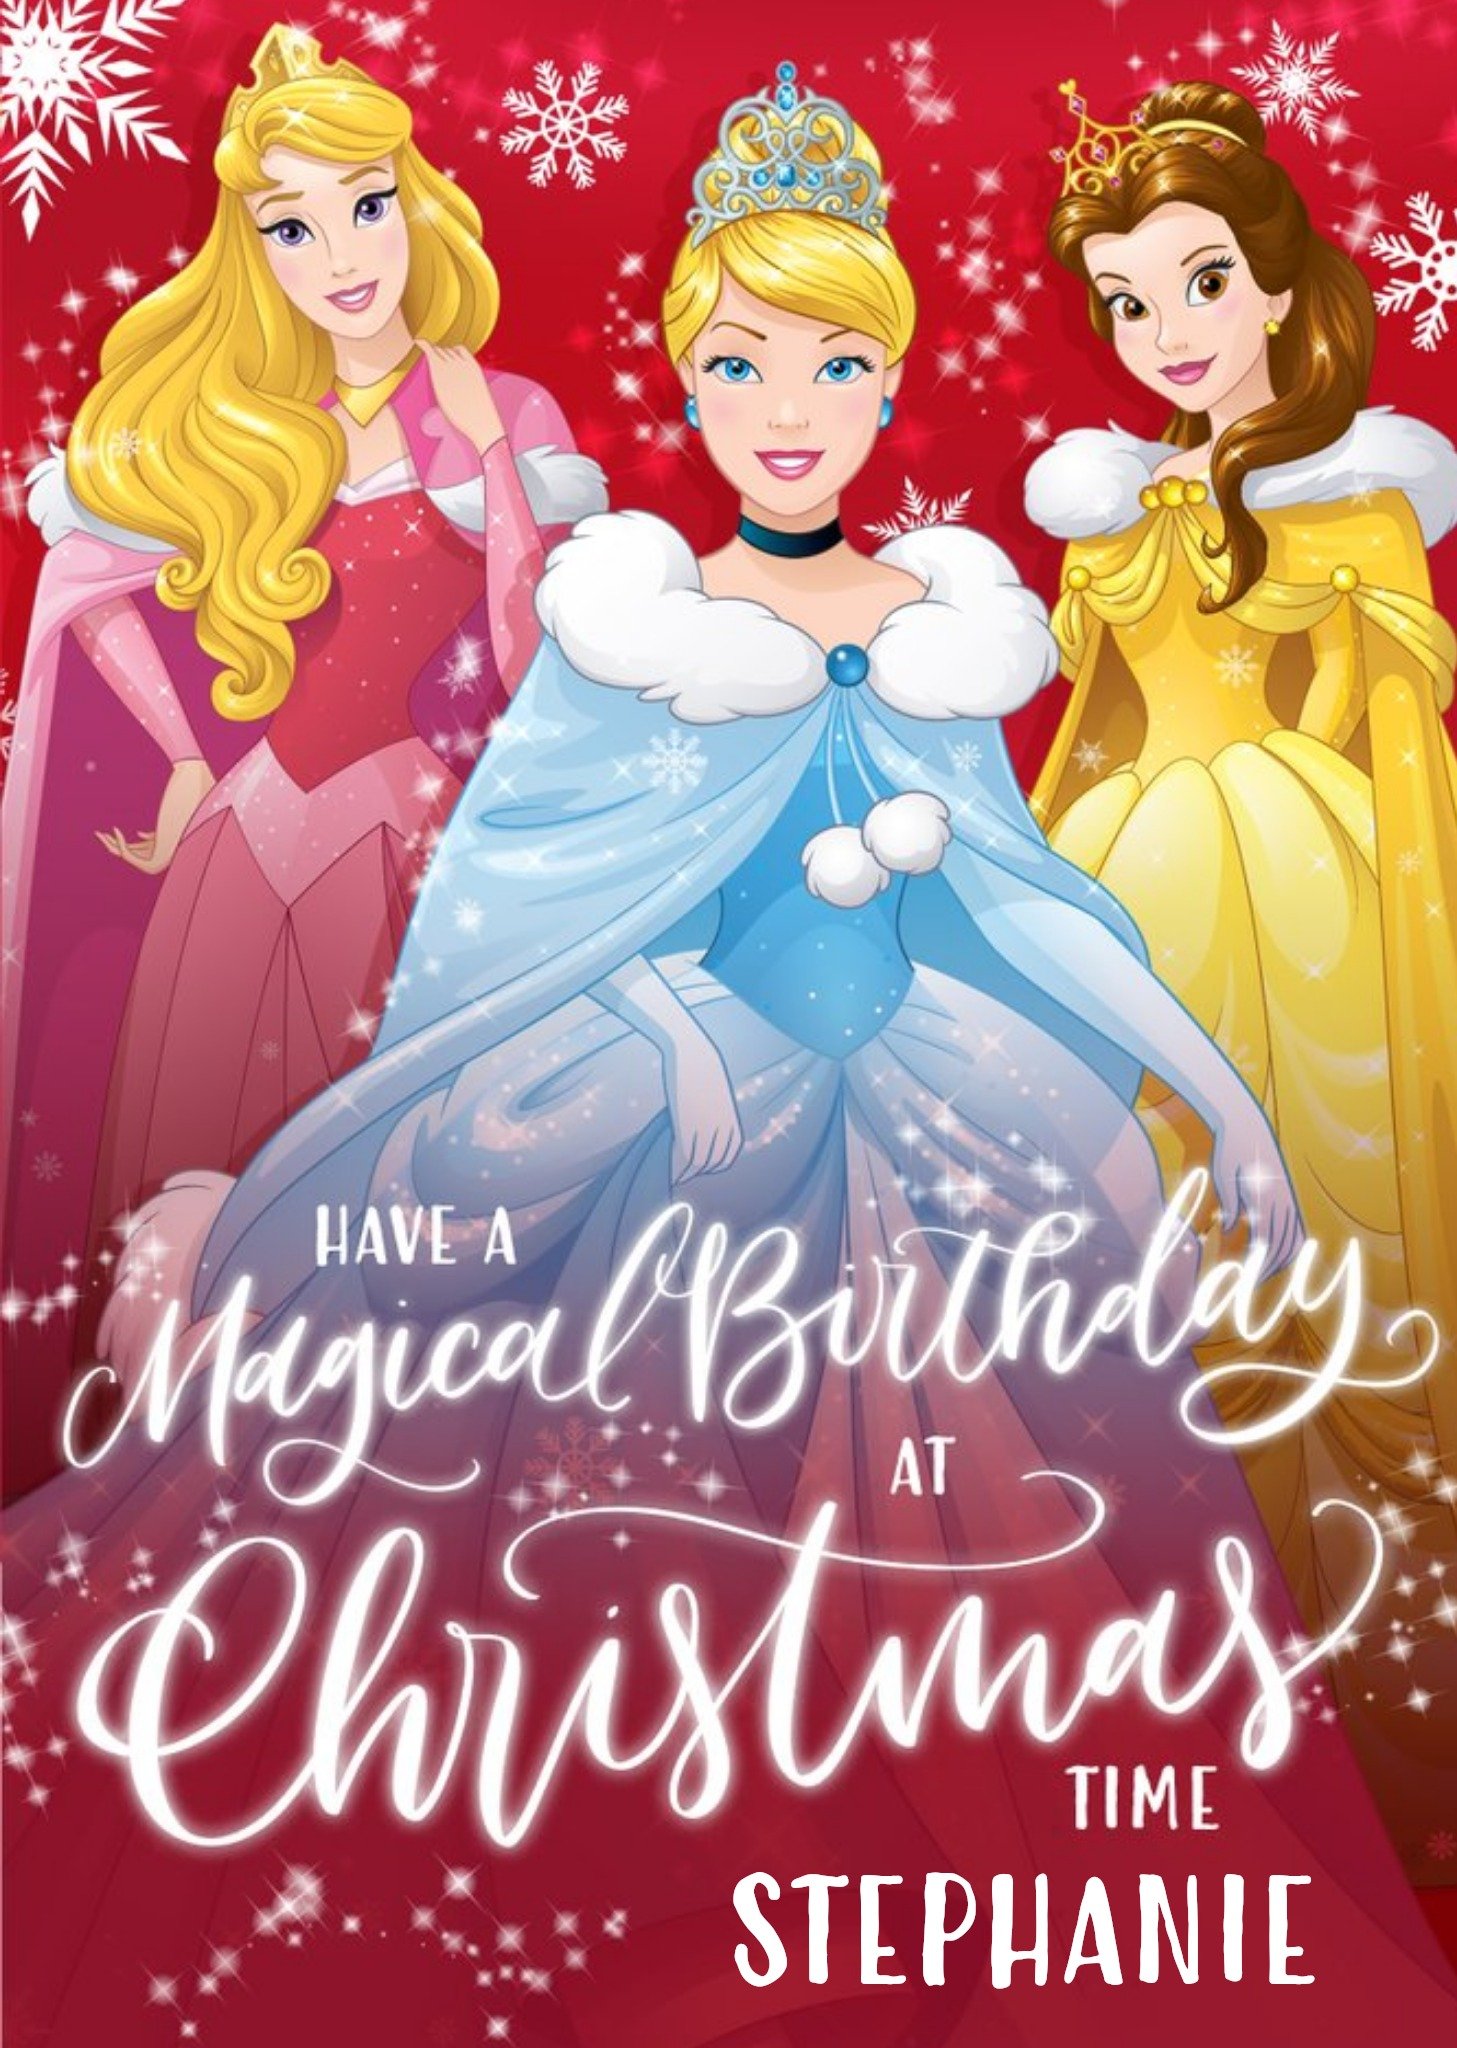 Disney Princess Magical Birthday At Christmas Personalised Card Ecard